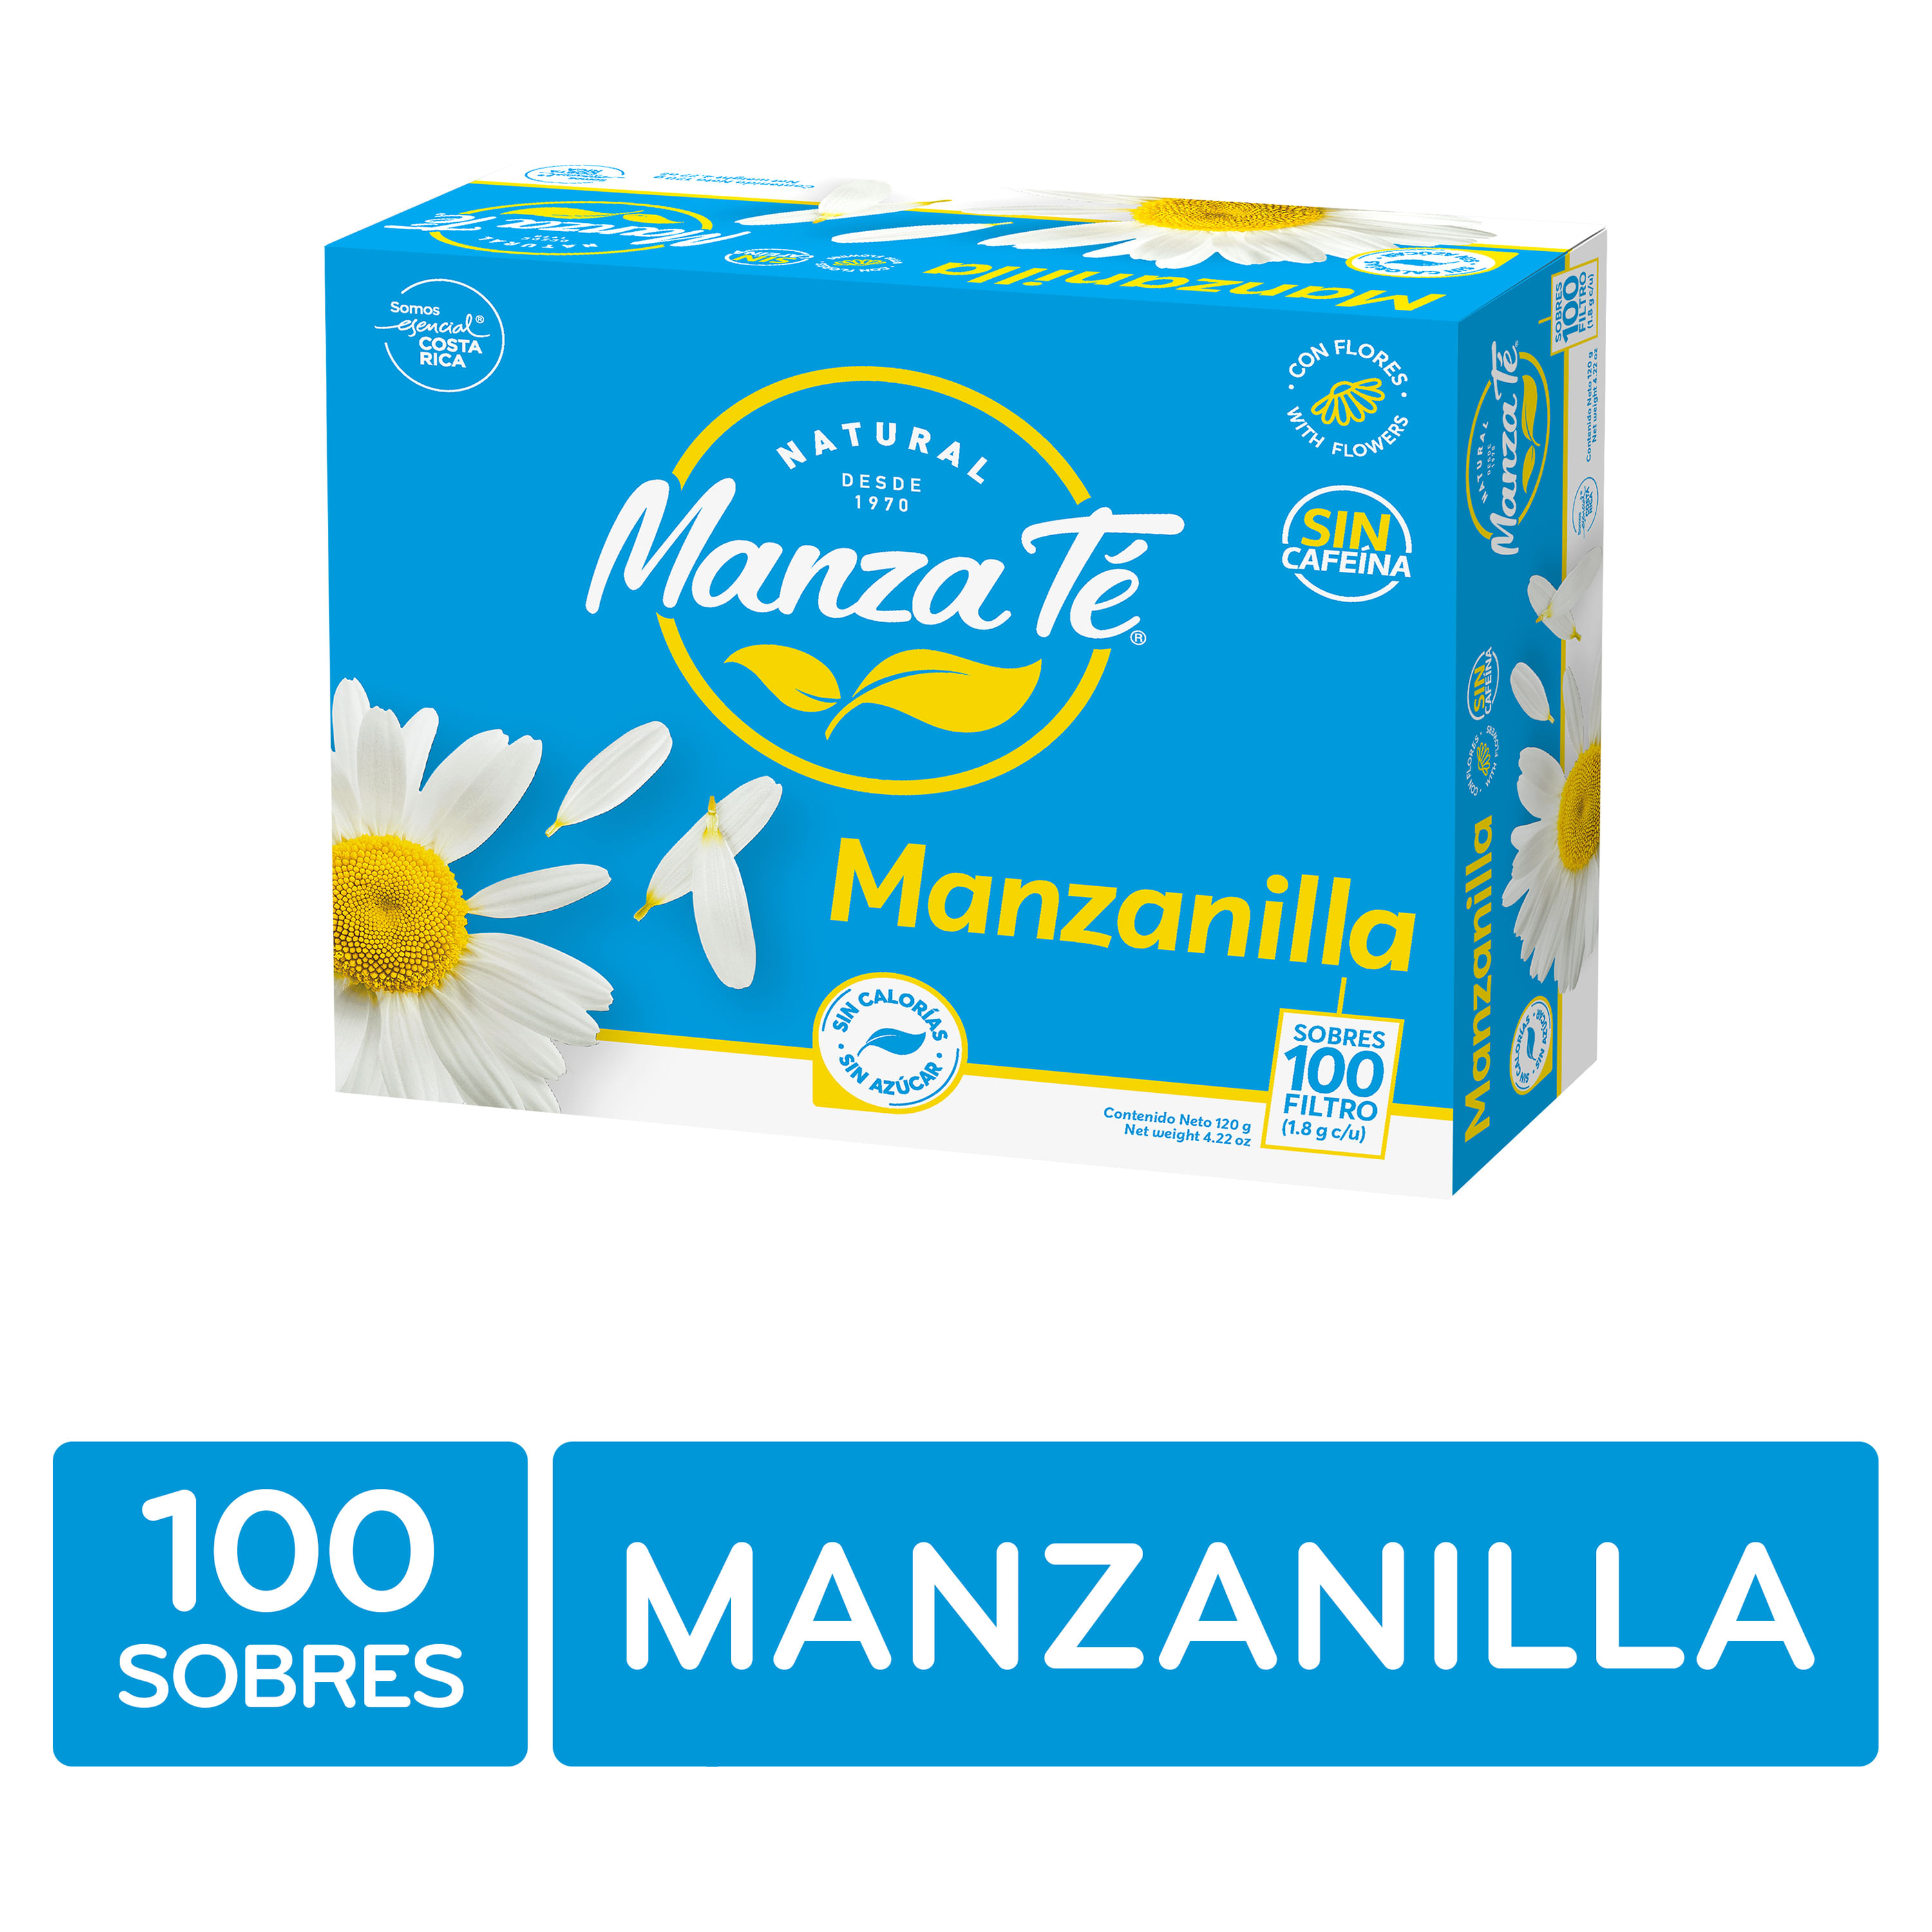 Manzanilla Anis – Manza Té